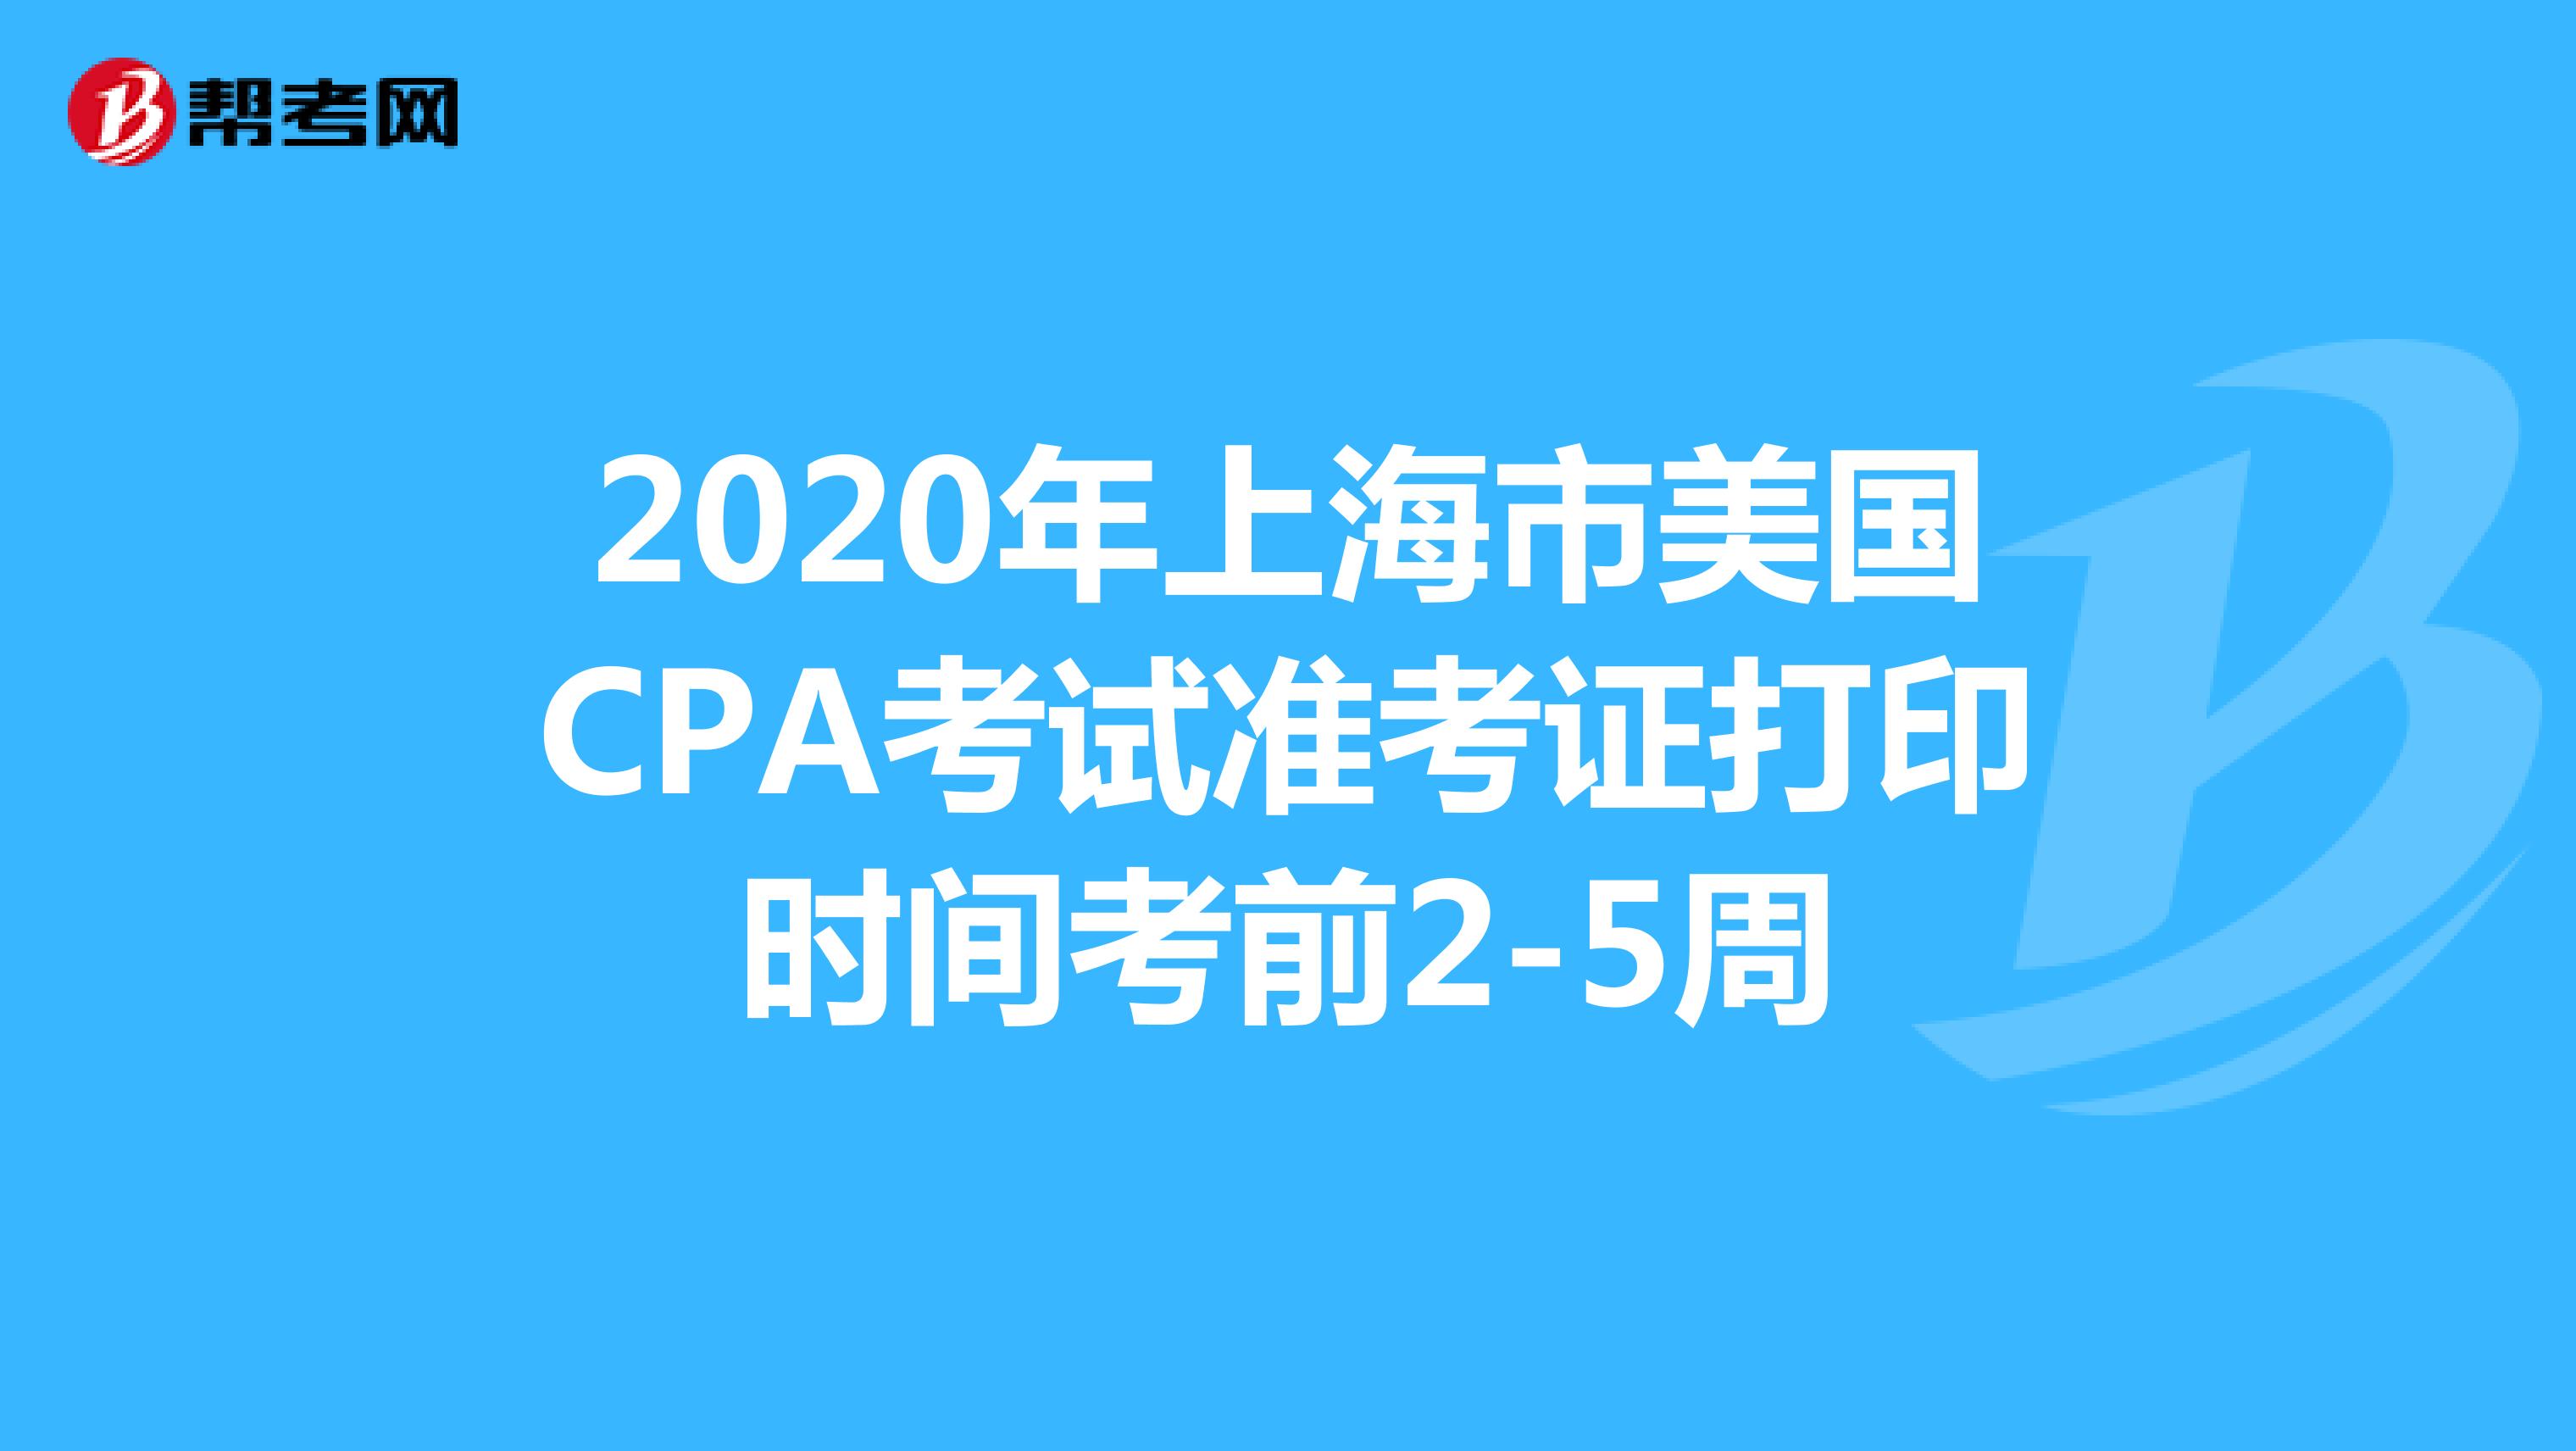 2020年上海市美国CPA考试准考证打印时间考前2-5周